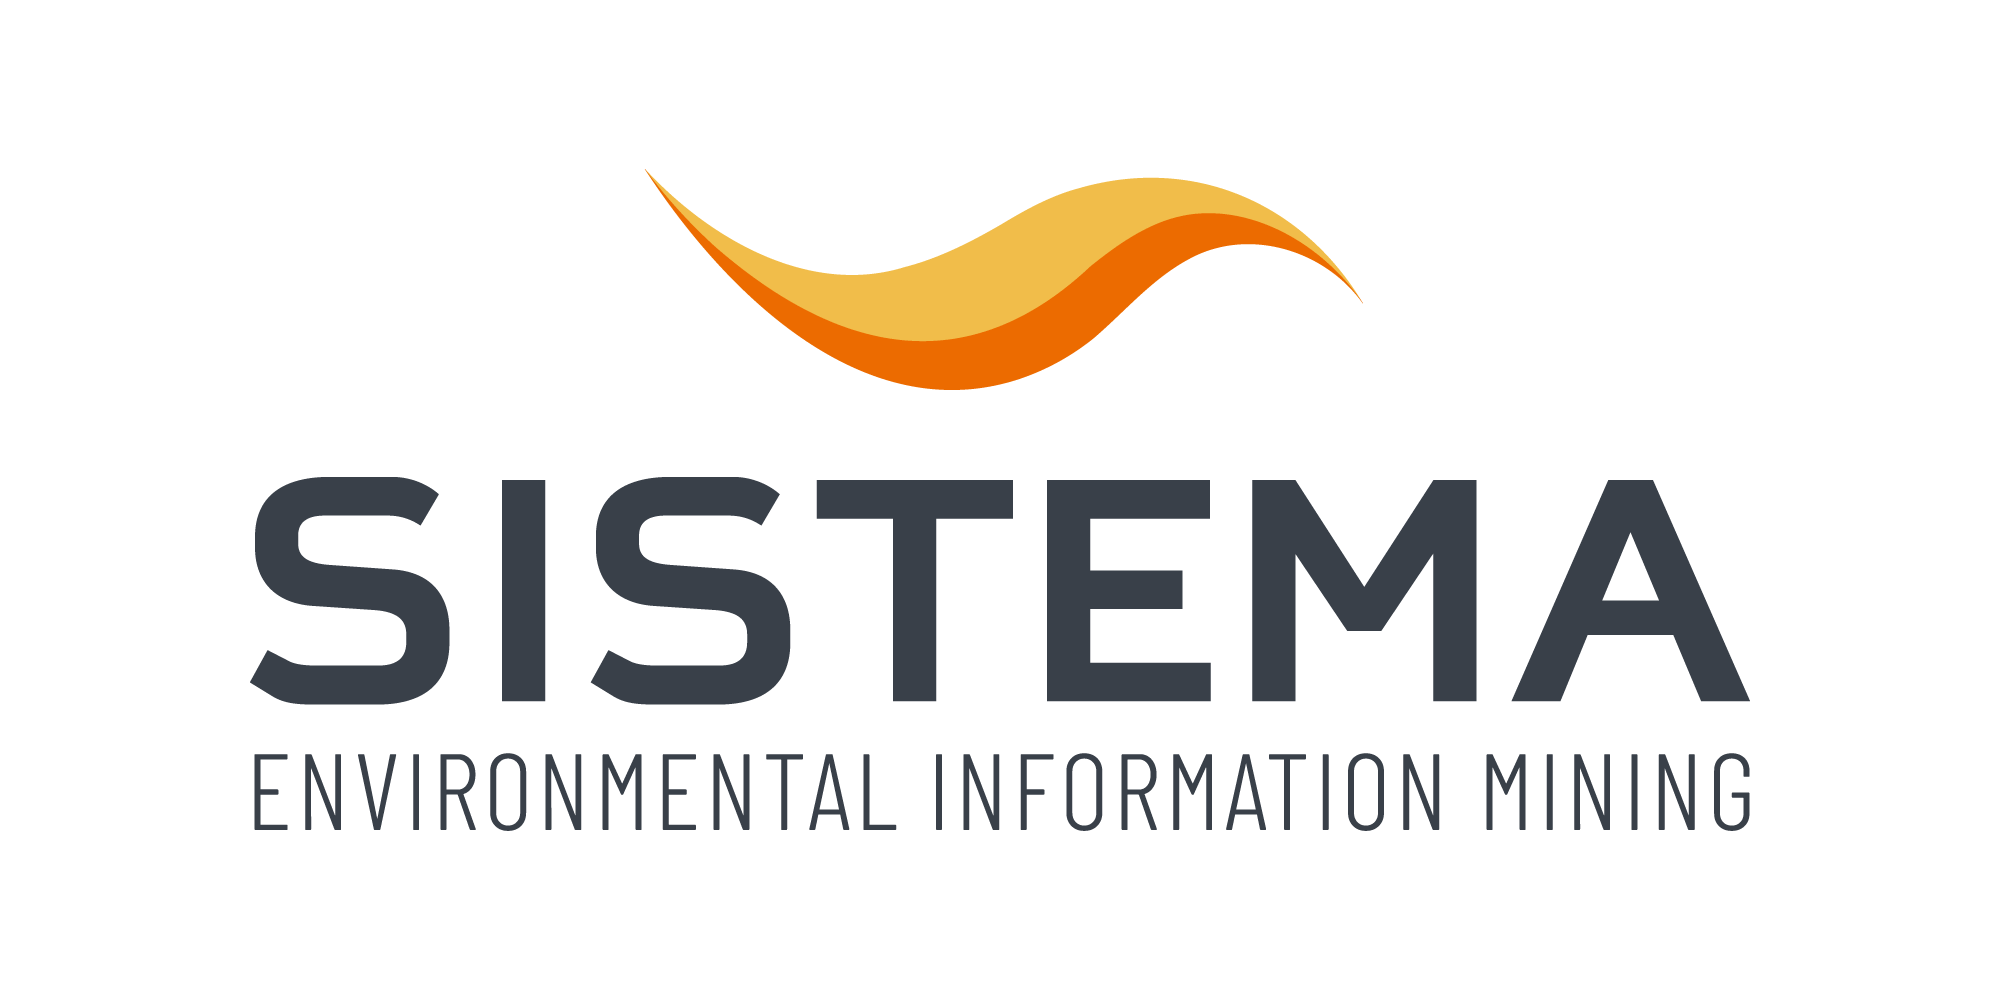 Sistema_Logo